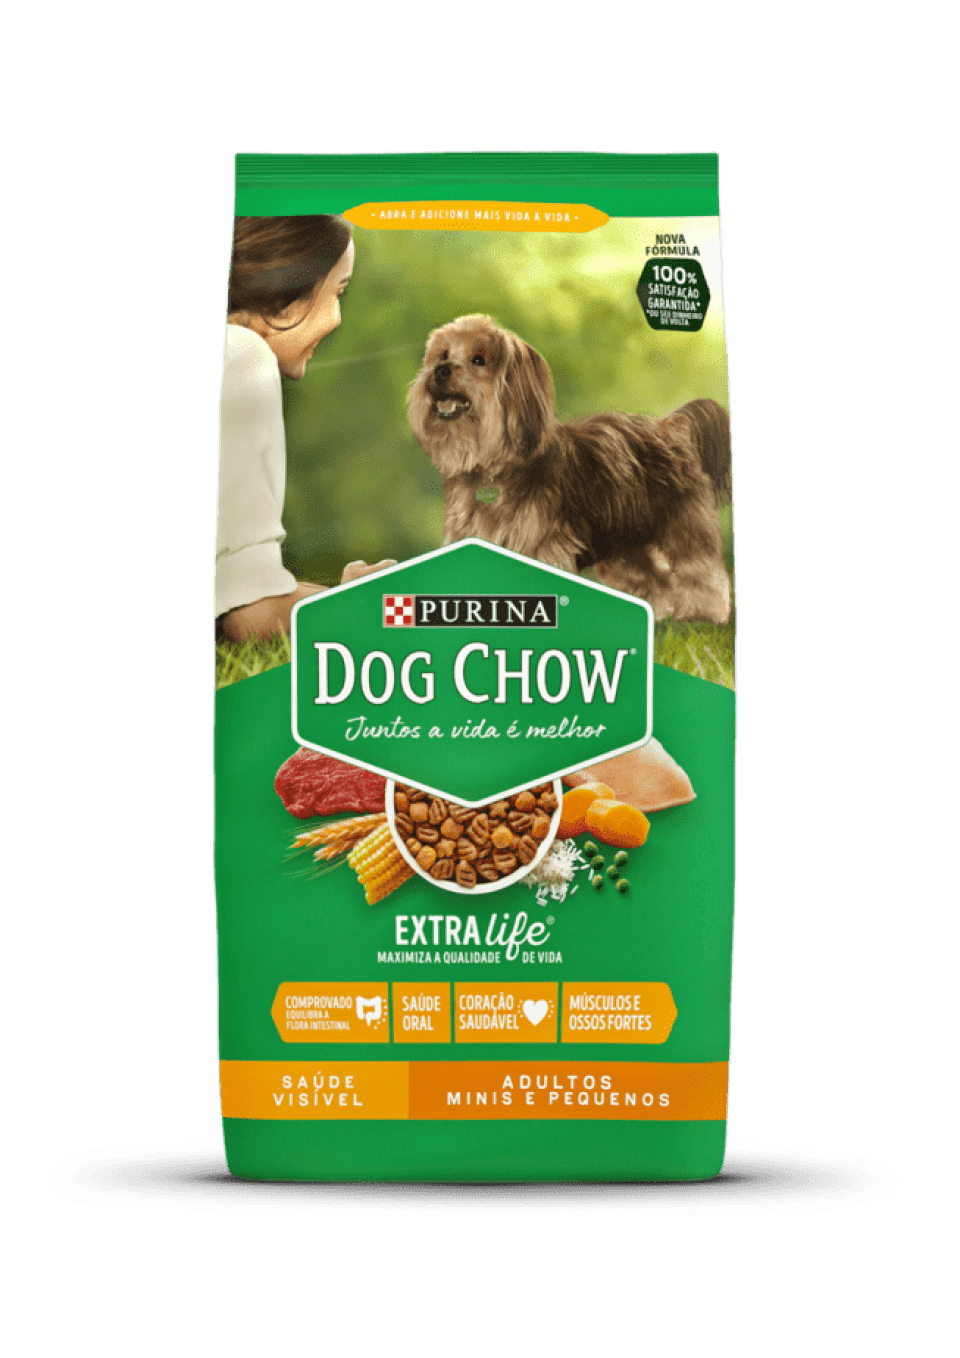 Dog Chow - хороший корм для собак? Дізнайтеся про його основні інгредієнти